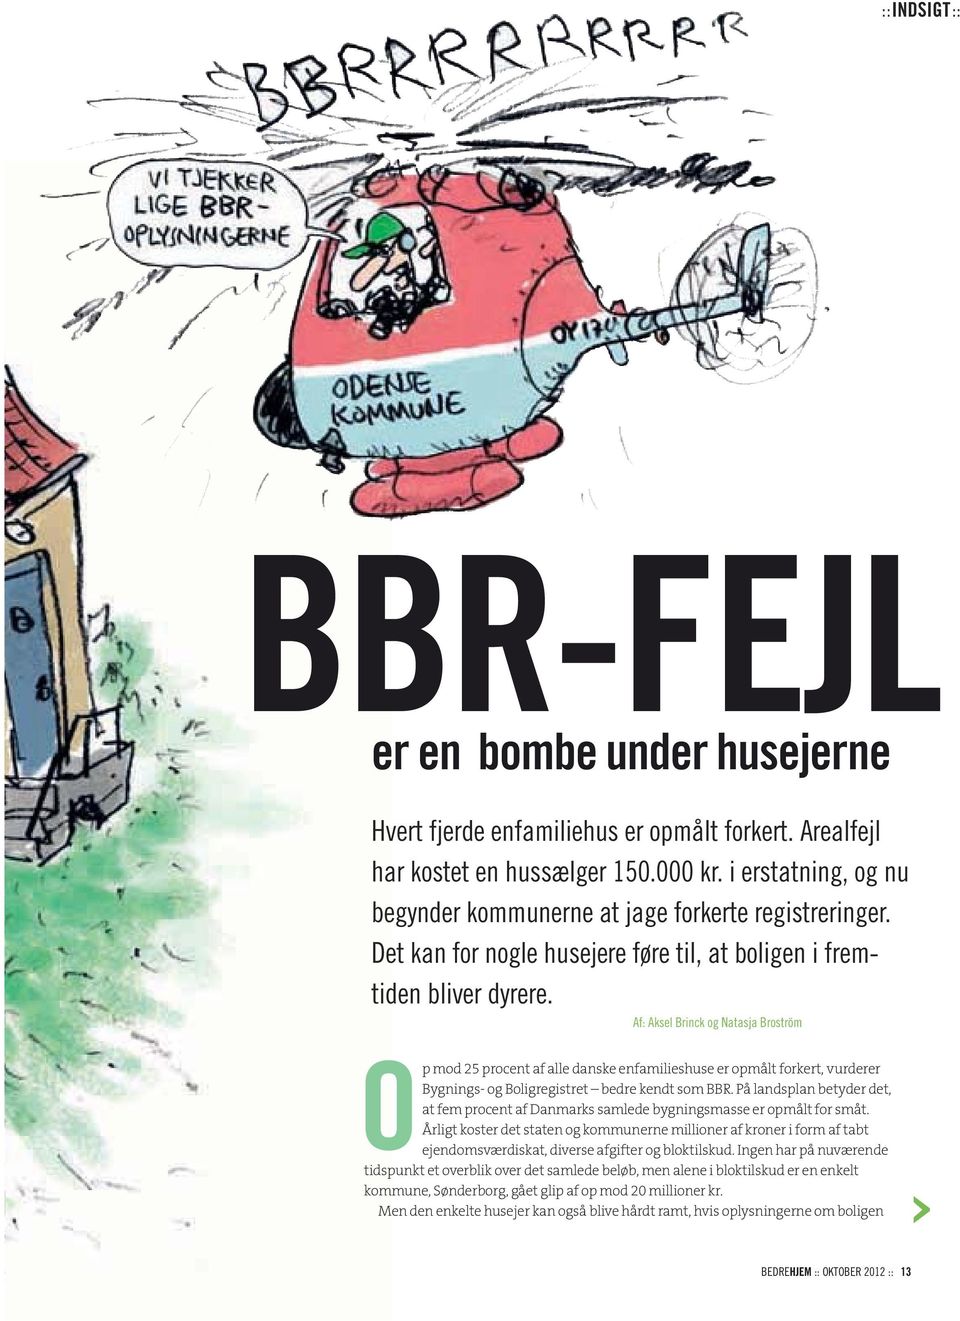 Af: Aksel Brinck og Natasja Broström Op mod 25 procent af alle danske enfamilieshuse er opmålt forkert, vurderer Bygnings- og Boligregistret bedre kendt som BBR.